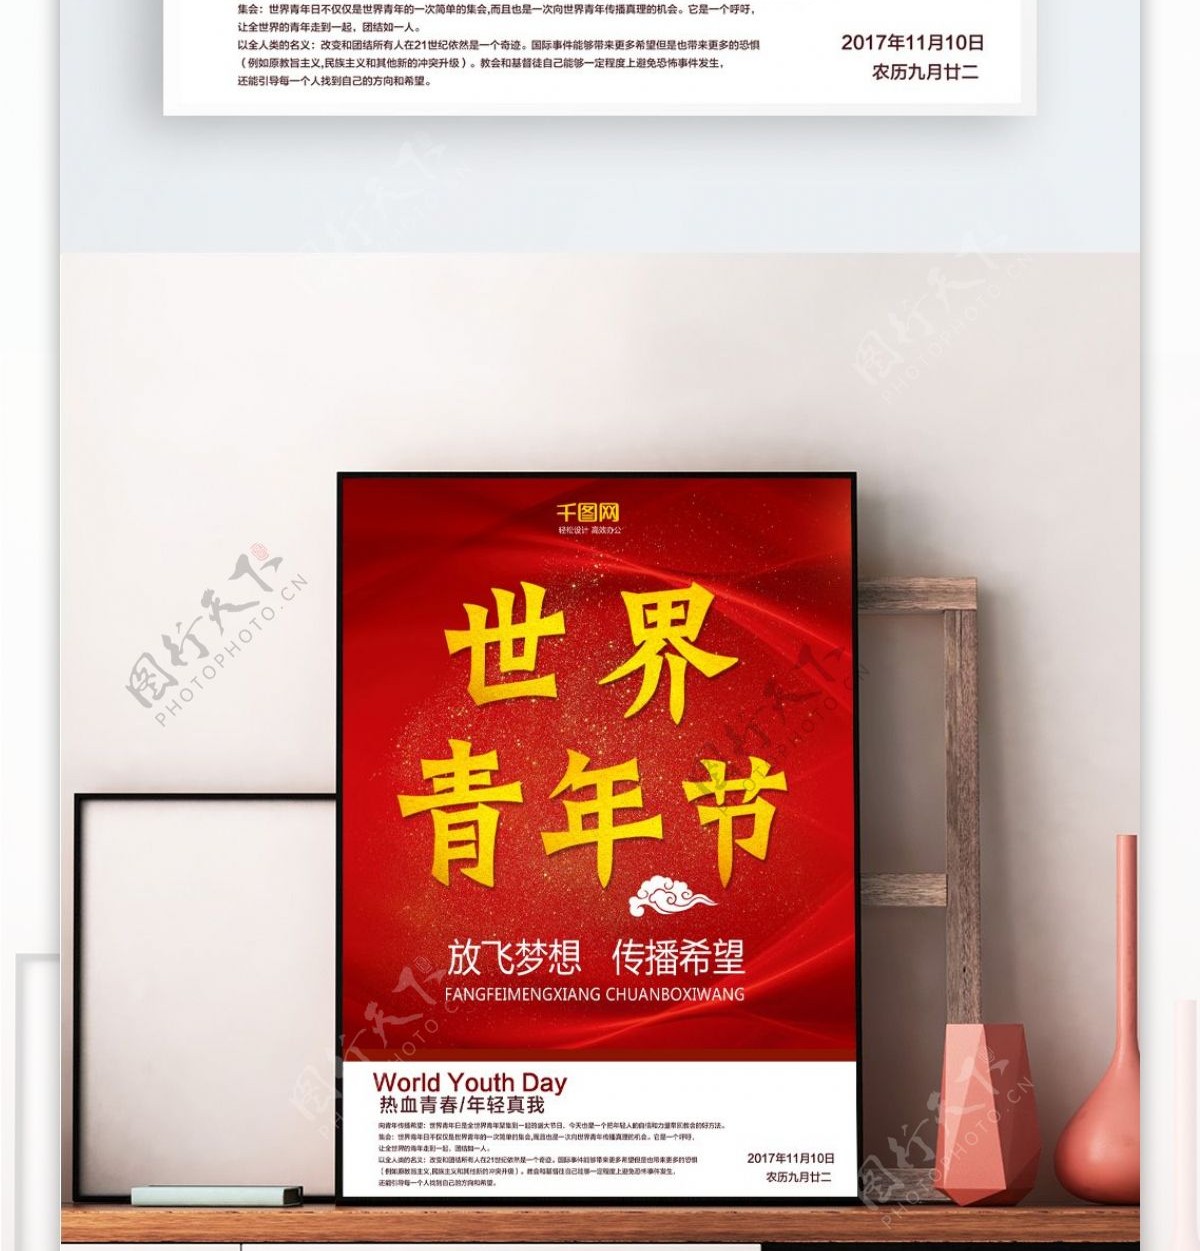 2017年11月10日红色简约世界青年节宣传广告节日海报设计